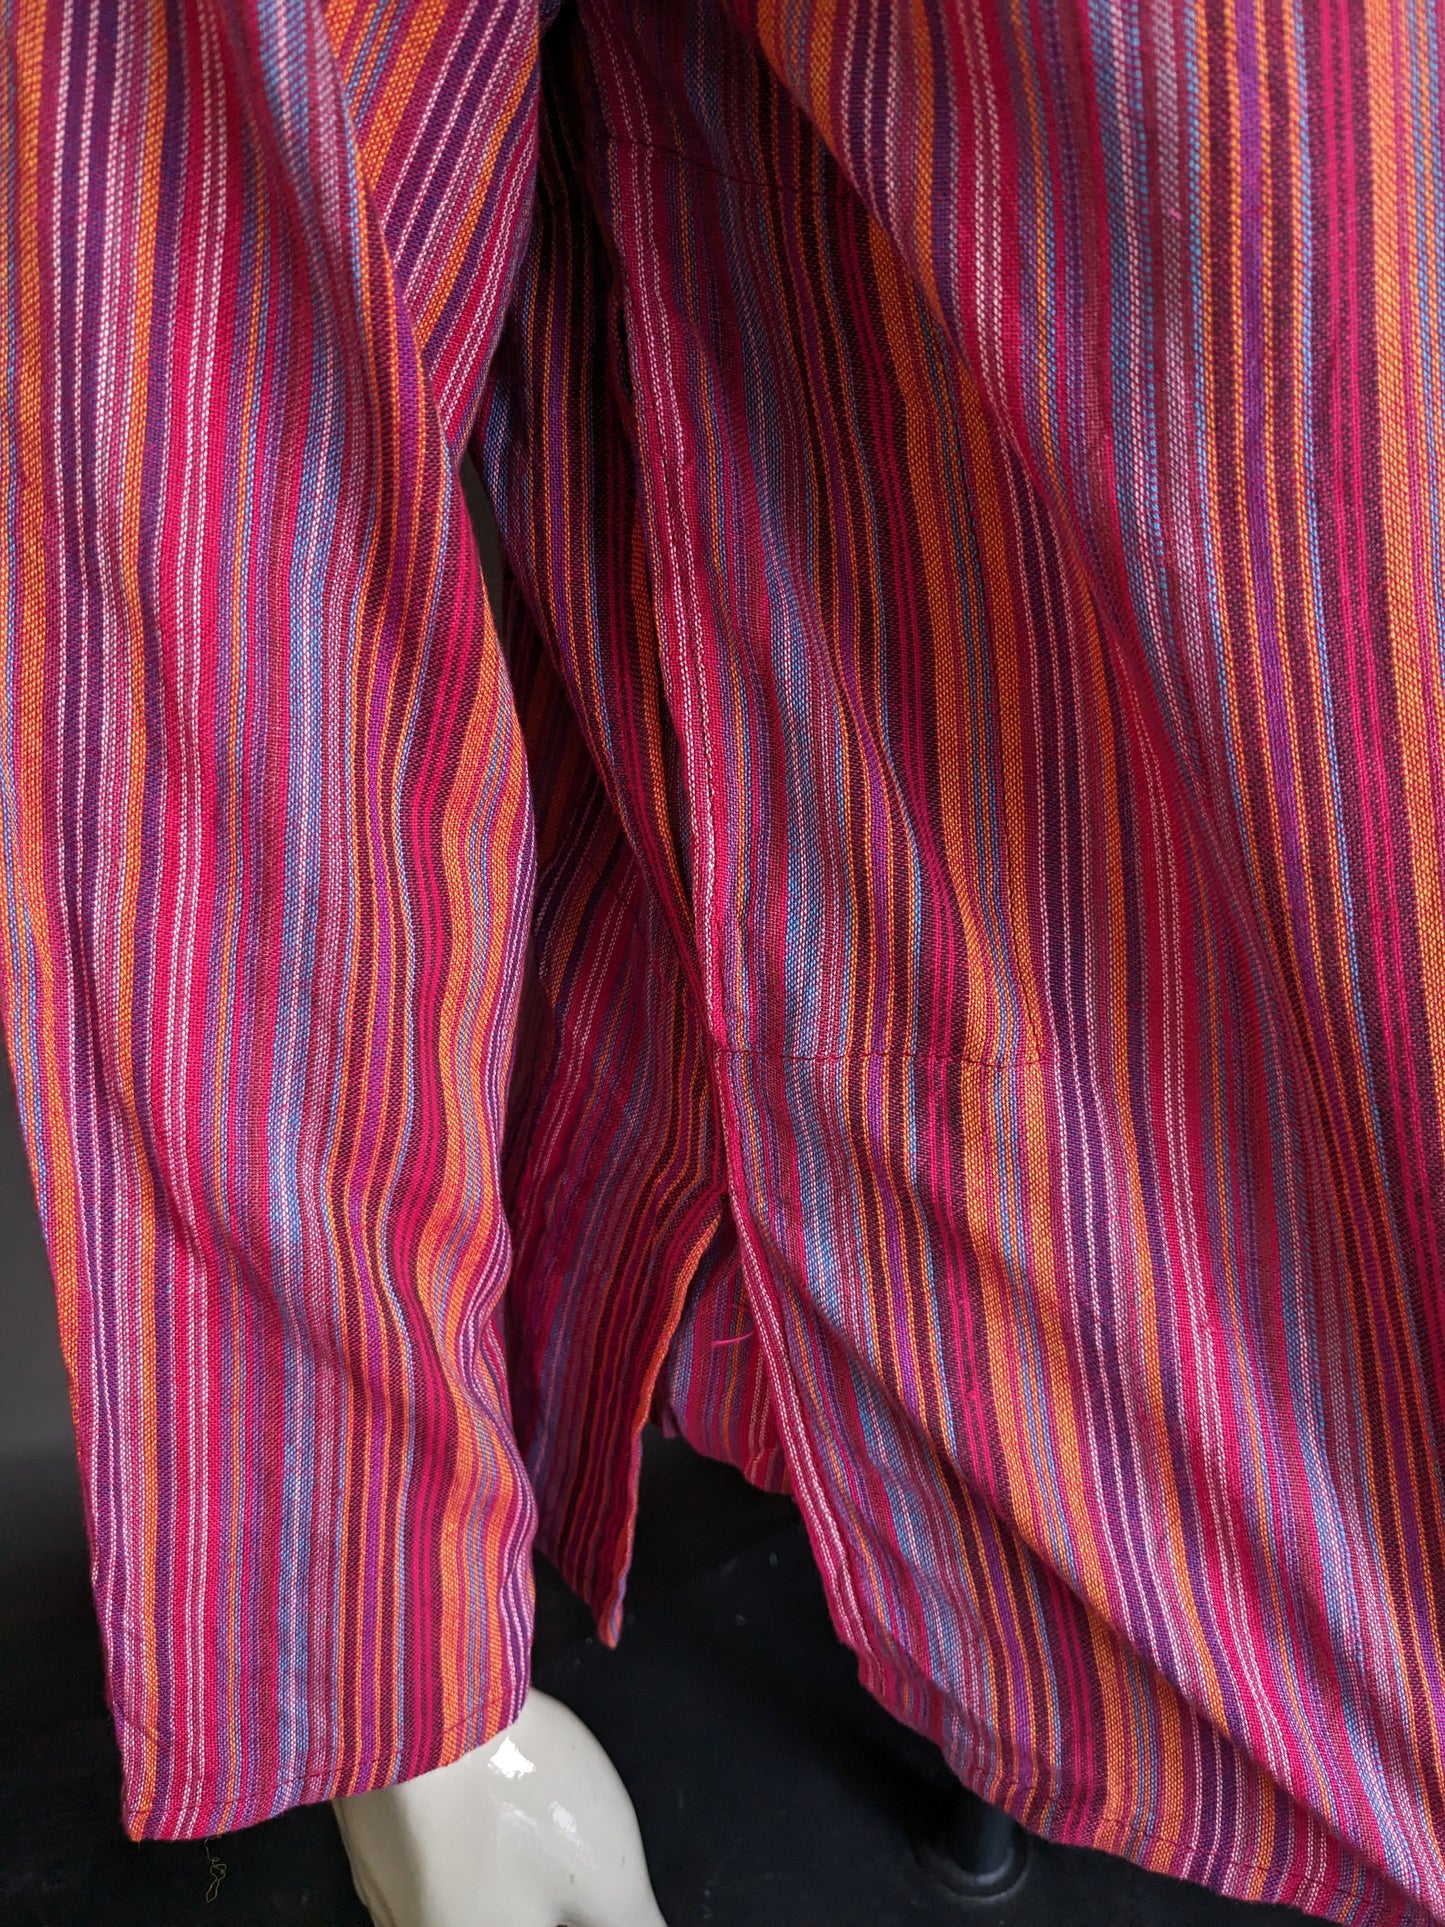 Modas vintage Baghdad Polotrui / Shirt con collare Mao / Standing / Farmer. A strisce rosse / colorate. Taglia L.